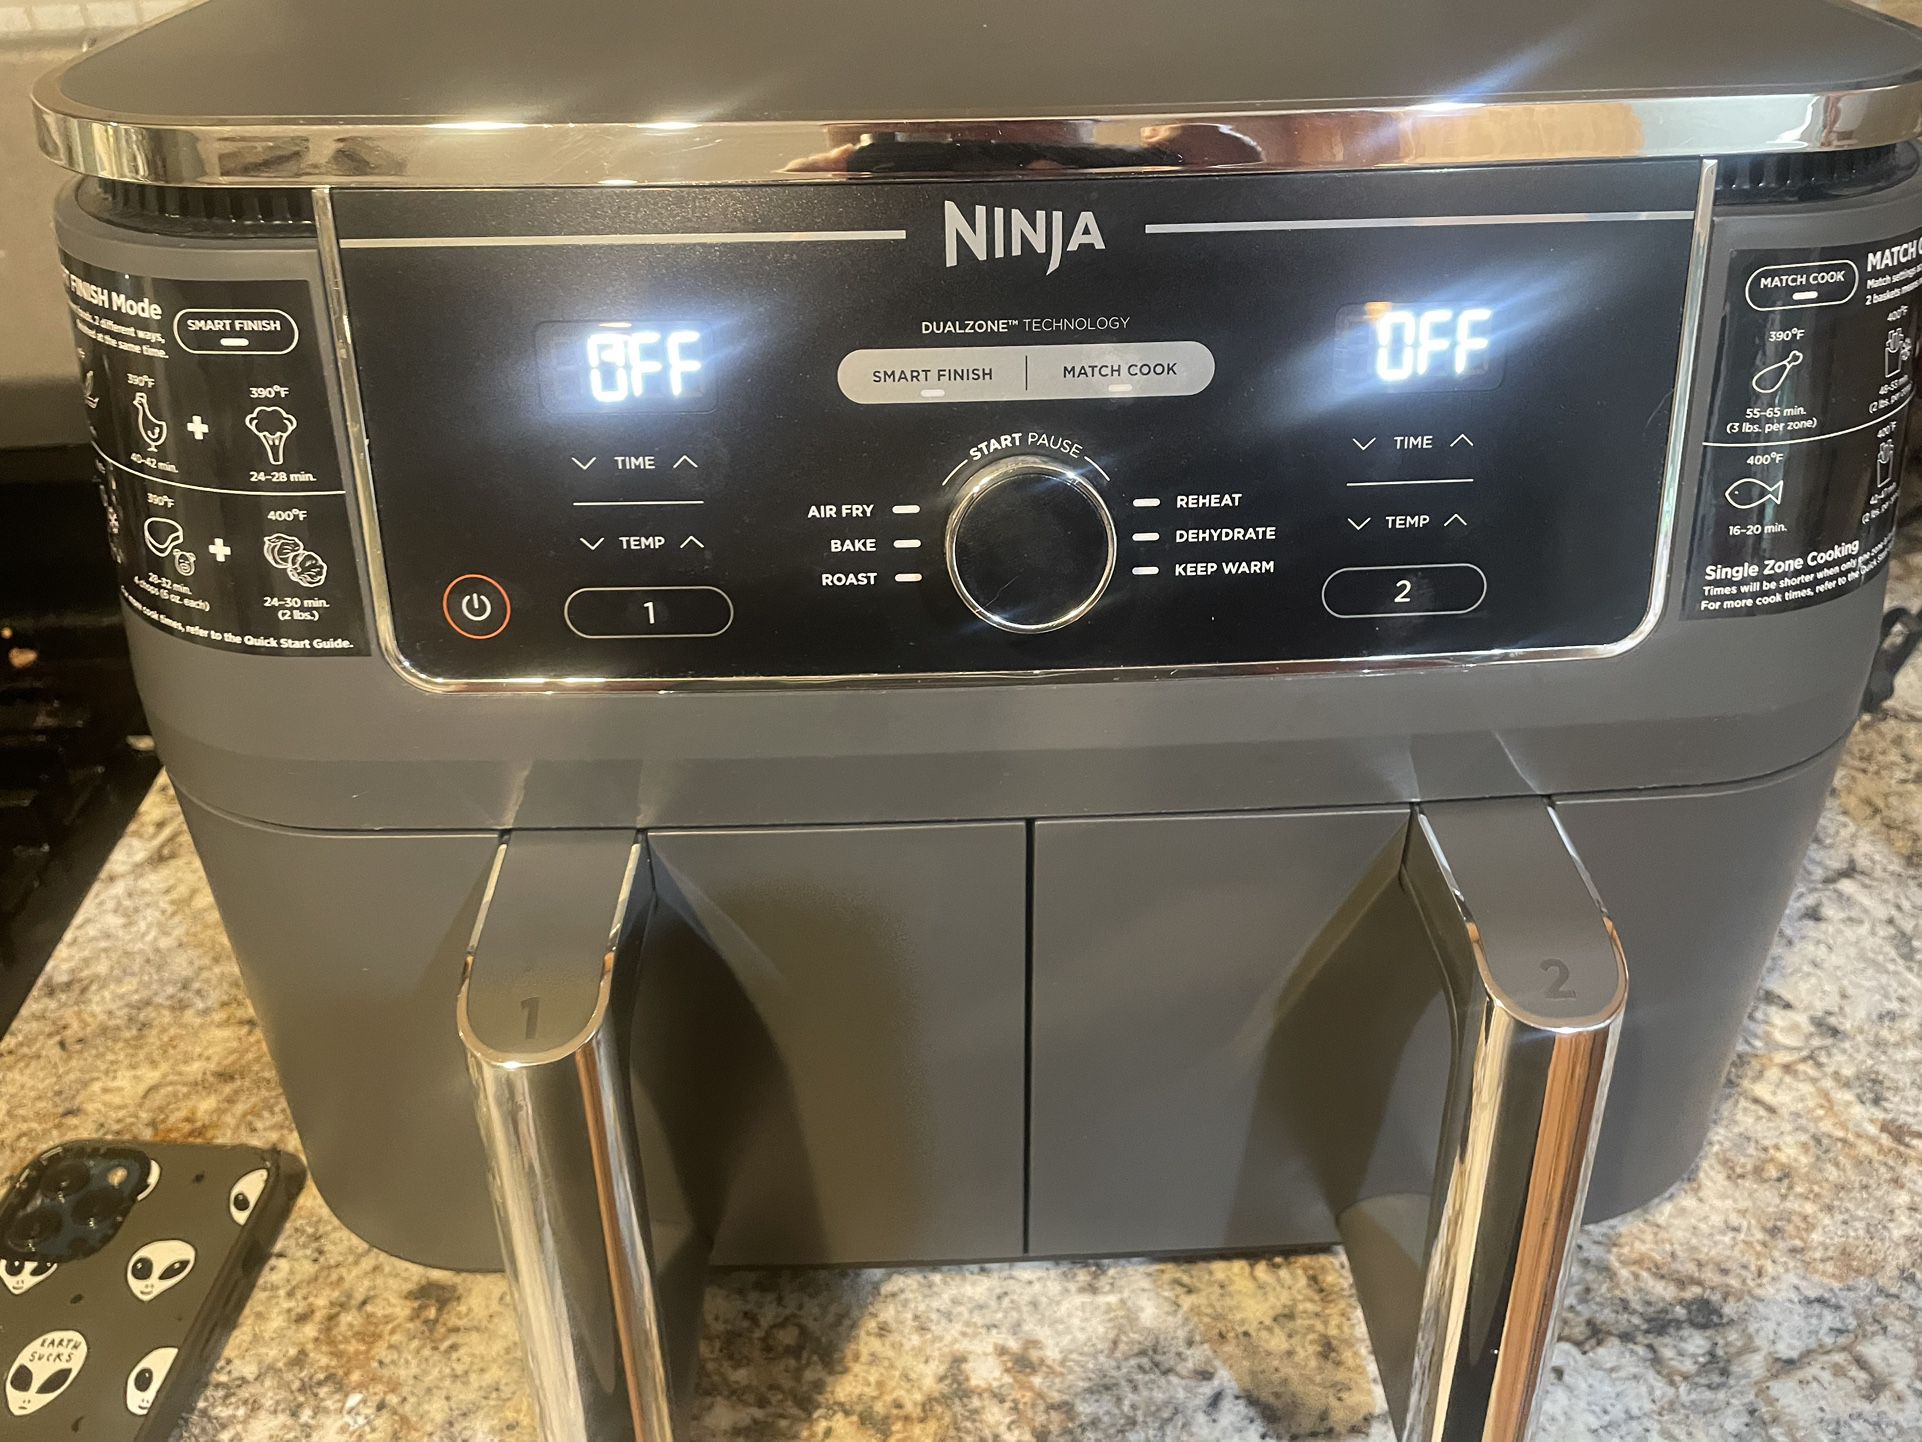 Ninja Air fryer 